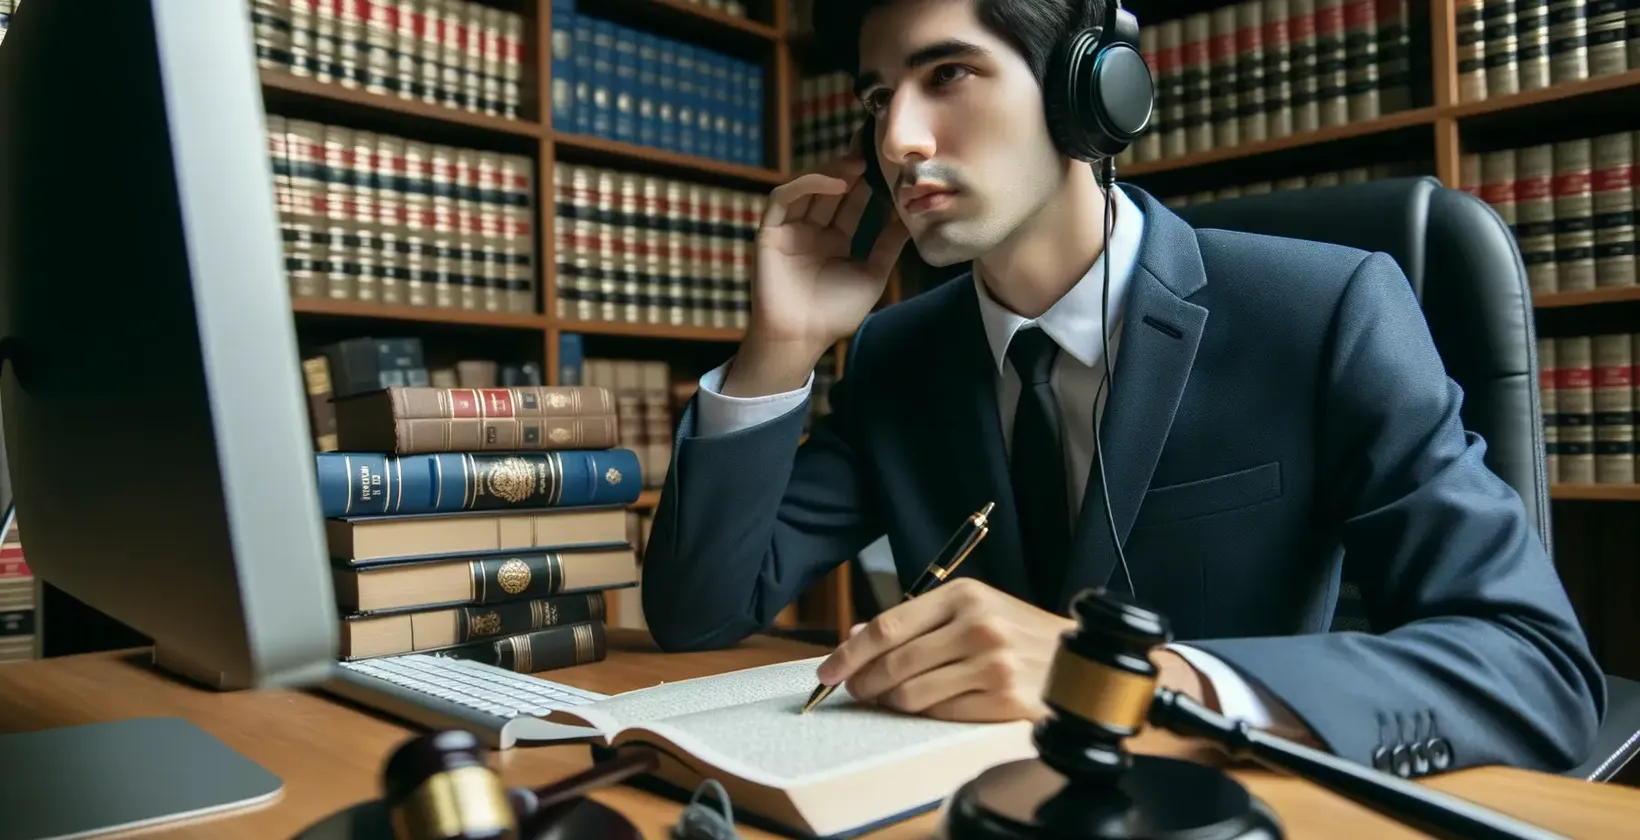 Serviços de transcrição jurídica apresentados por um profissional com fones de ouvido em uma biblioteca jurídica.